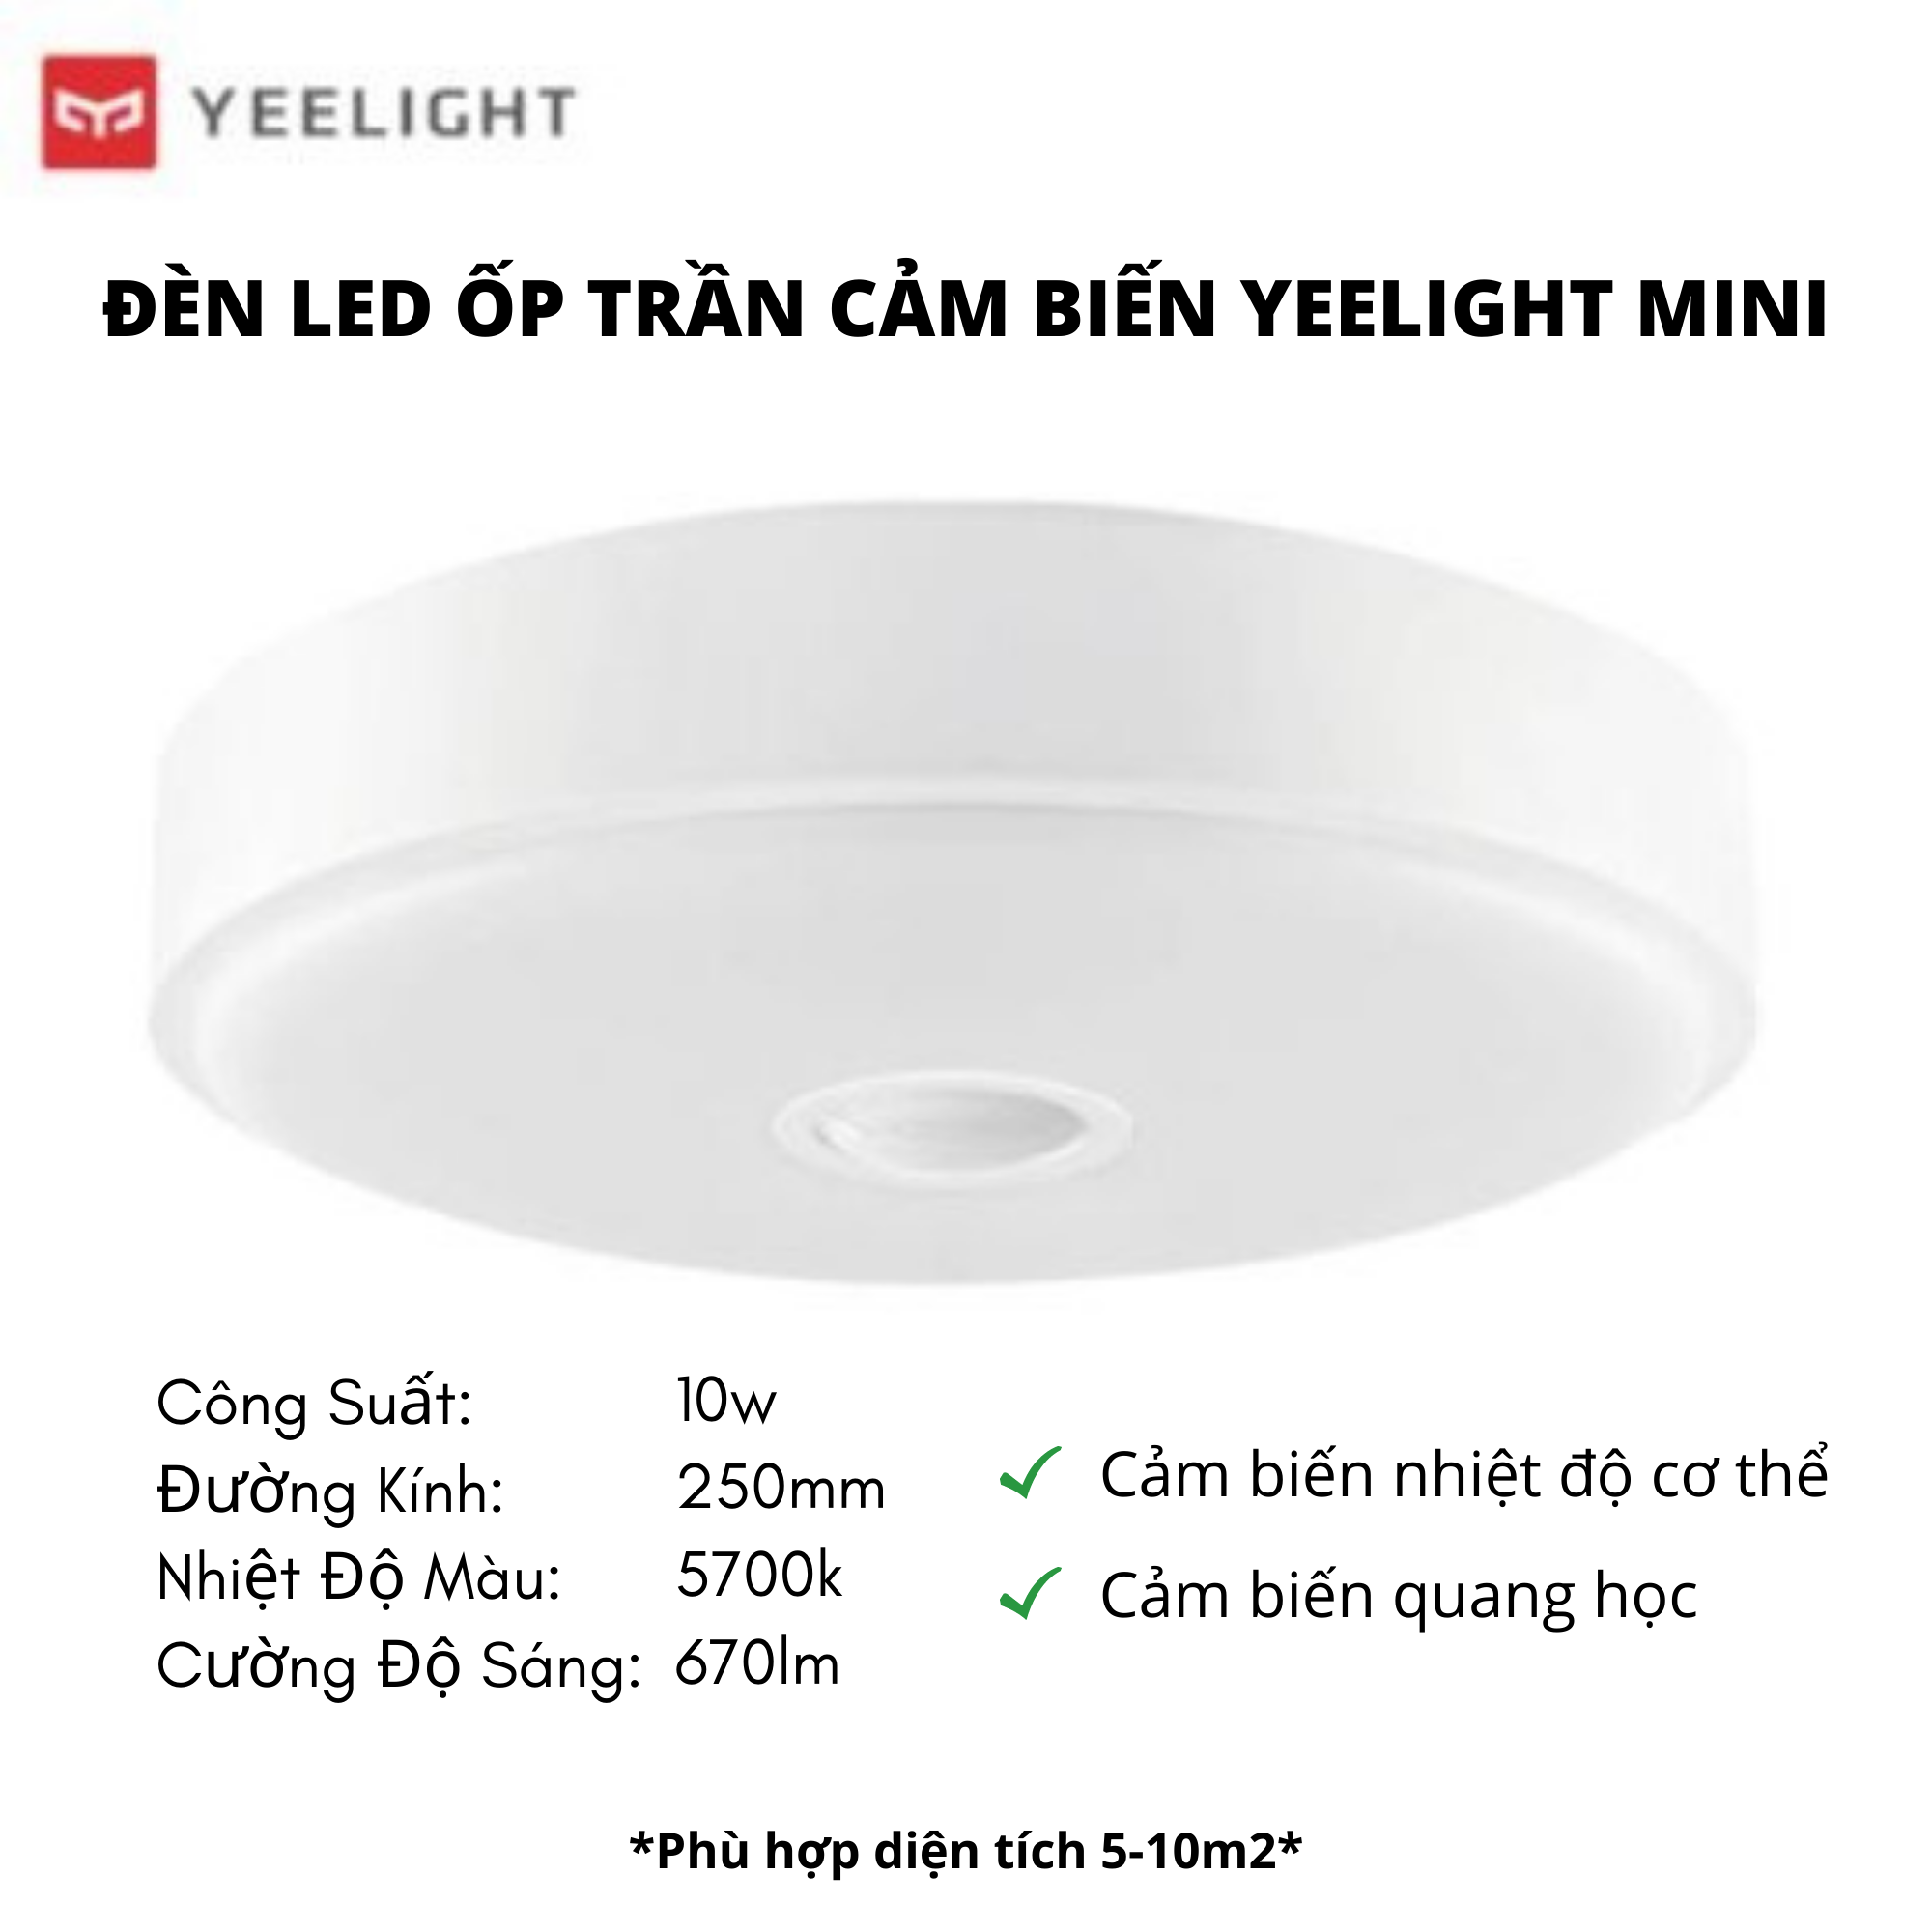 Đèn Led Ốp Trần Cảm Biến Chuyển Động Mini Xiaomi Yeelight 250mm - Bản Quốc Tế Nhập Khẩu 